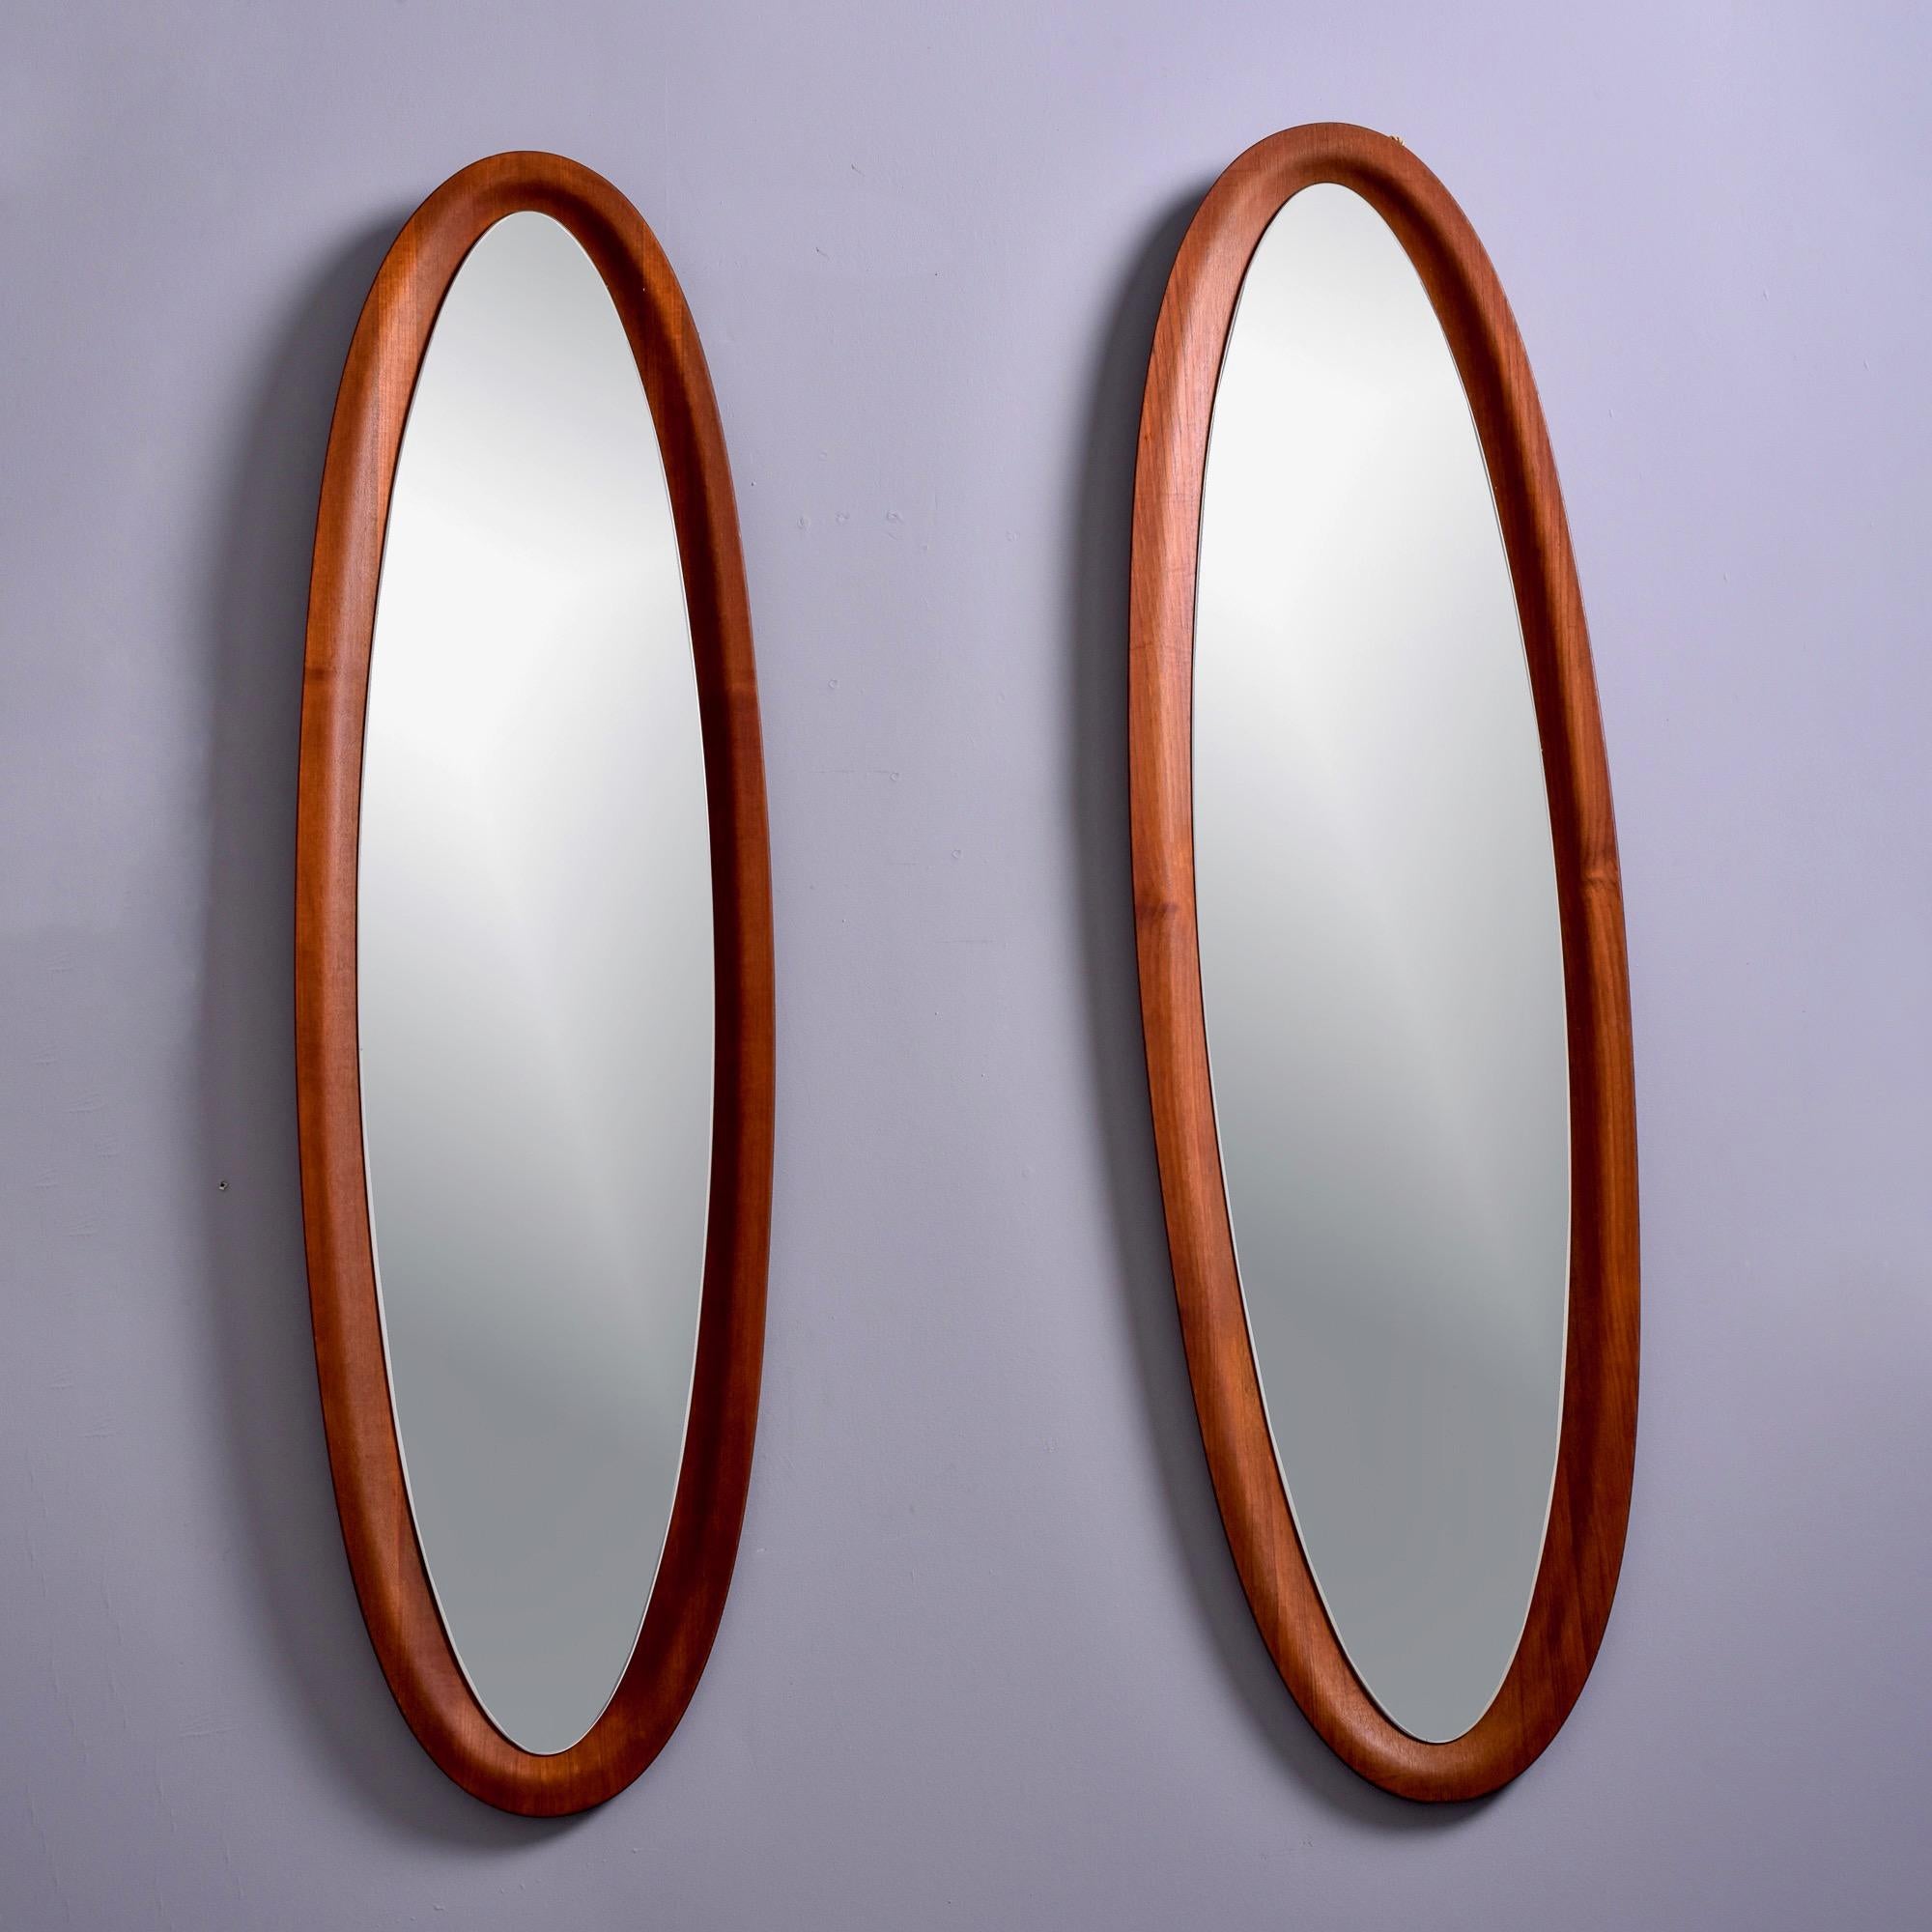 Dieses in Italien gefundene Paar ovaler Spiegel aus den 1960er Jahren hat einen Holzrahmen, der aus Nussbaum zu sein scheint. Die Rahmen haben die Form einer Schale, in die die Spiegel eingelassen sind. Unbekannter Hersteller. Verkauft und bepreist